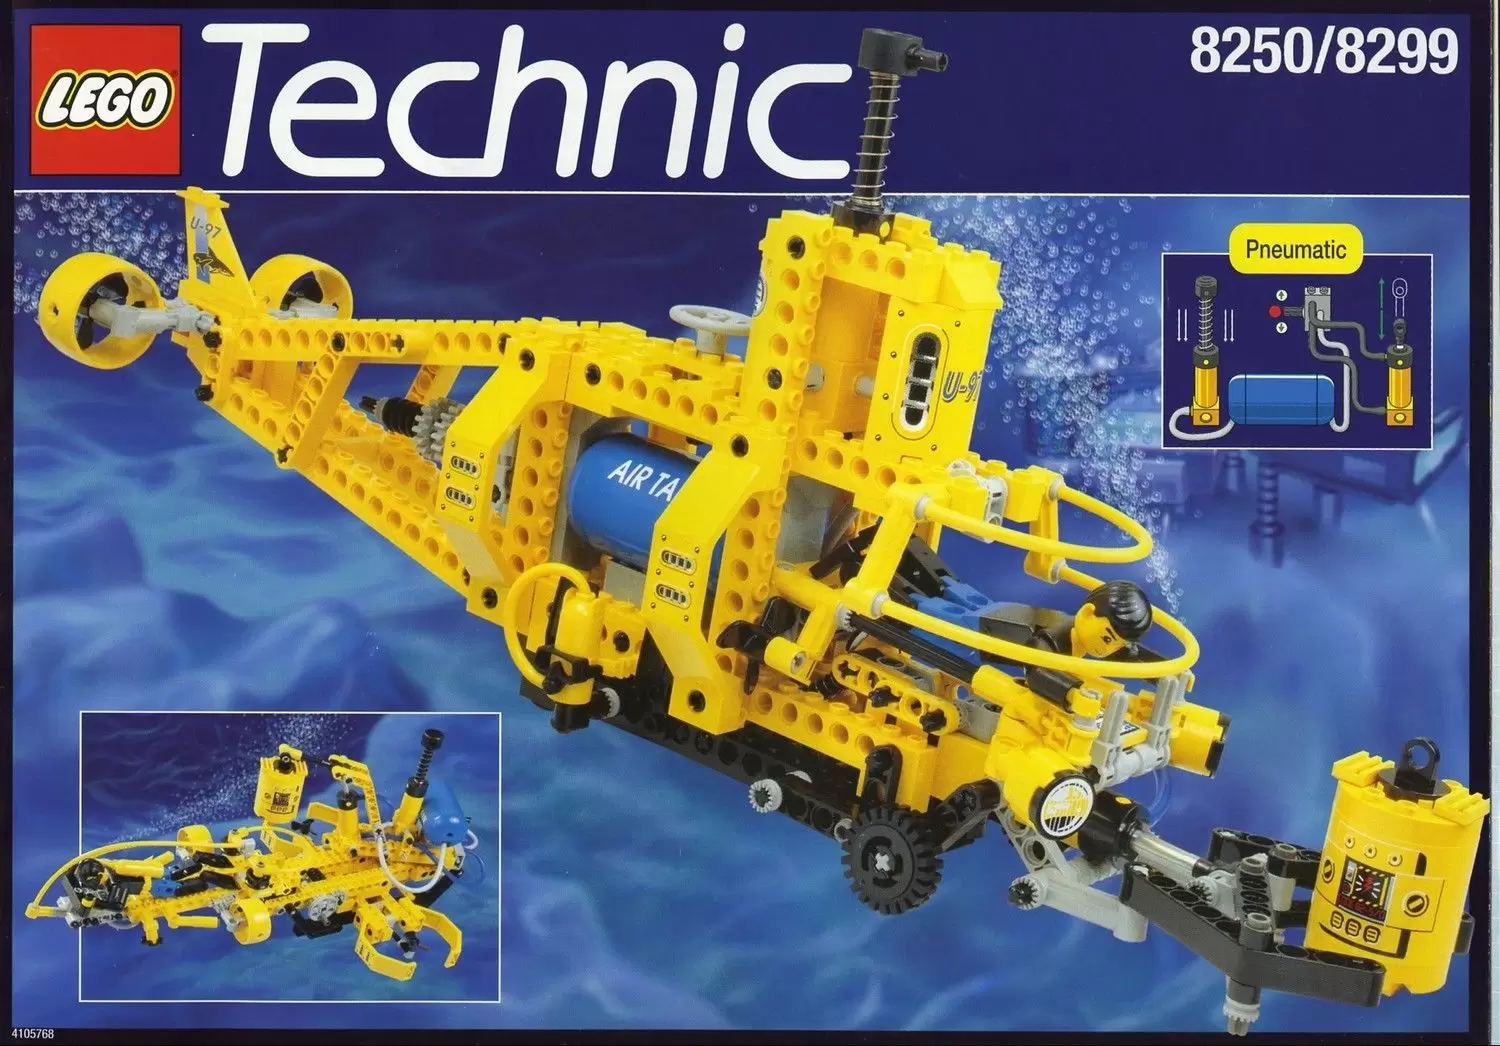 LEGO Technic - Search Sub